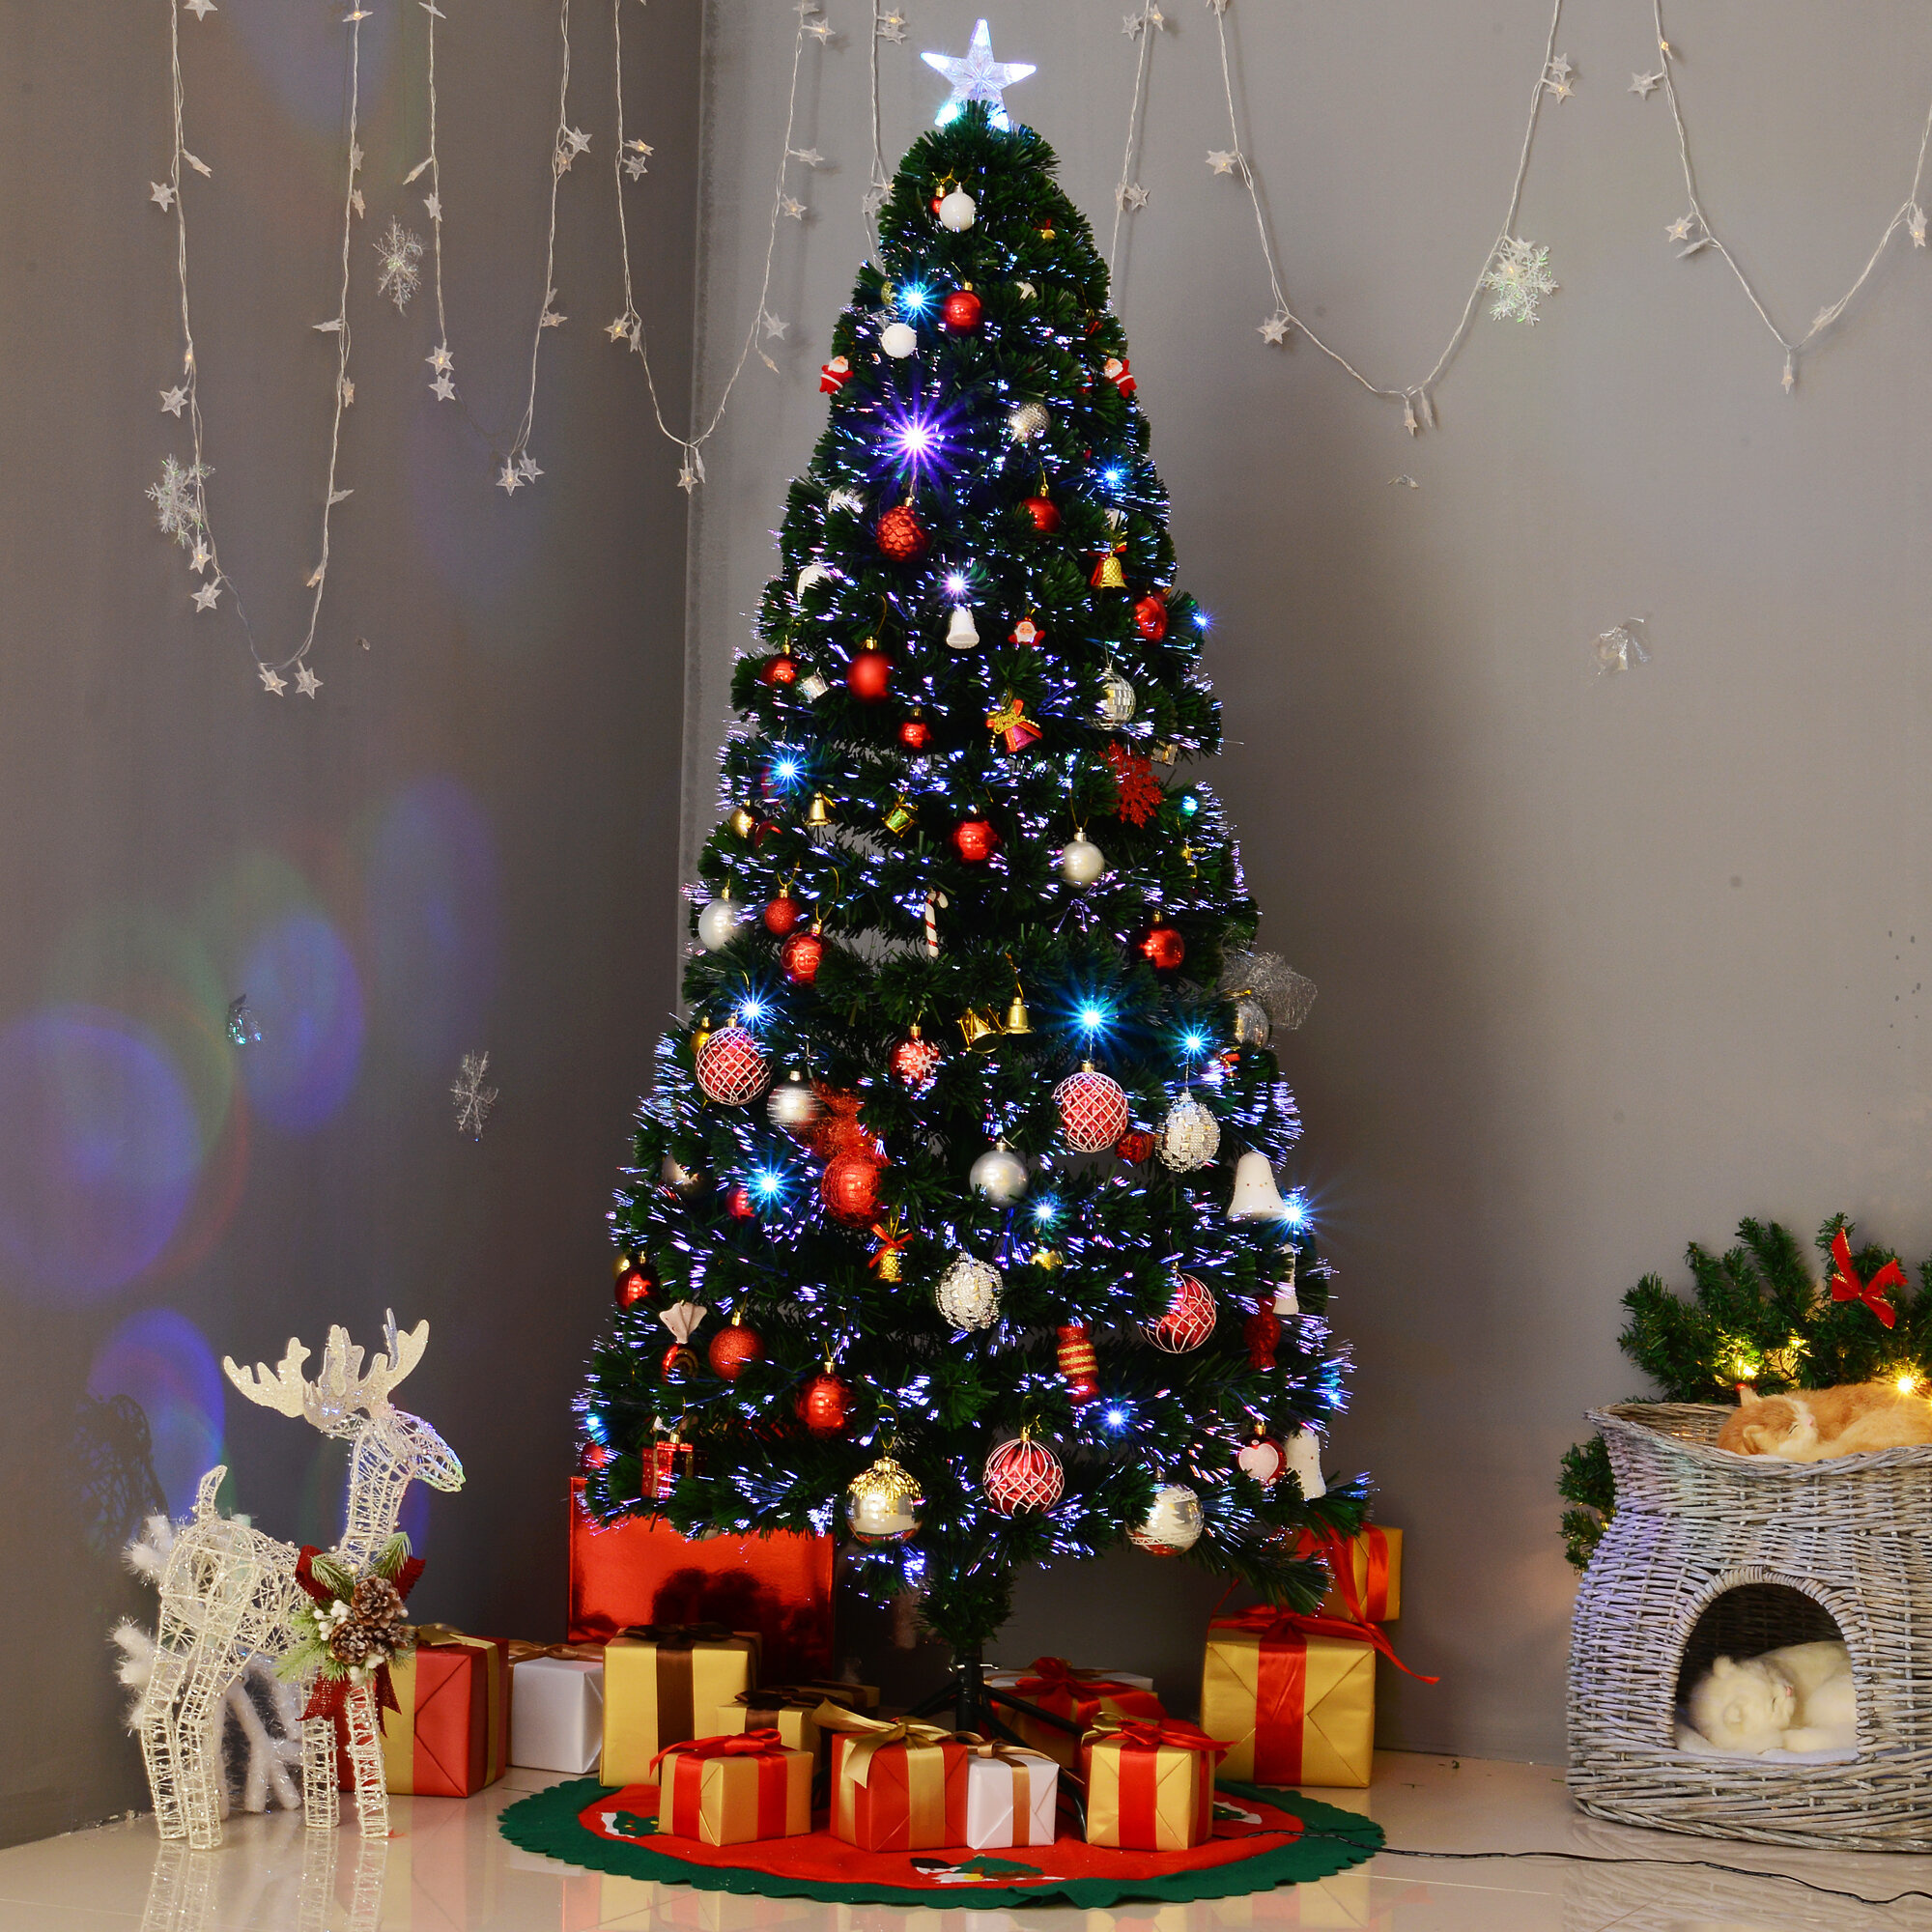 vervolging Onafhankelijk Legacy Koop Monzana Draadloze LED kerstboom kaarsen Multi-Colour kerstverlichting  15 stuks + 5 extra gratis Online bij ThuisXL.nl - ThuisXL.nl